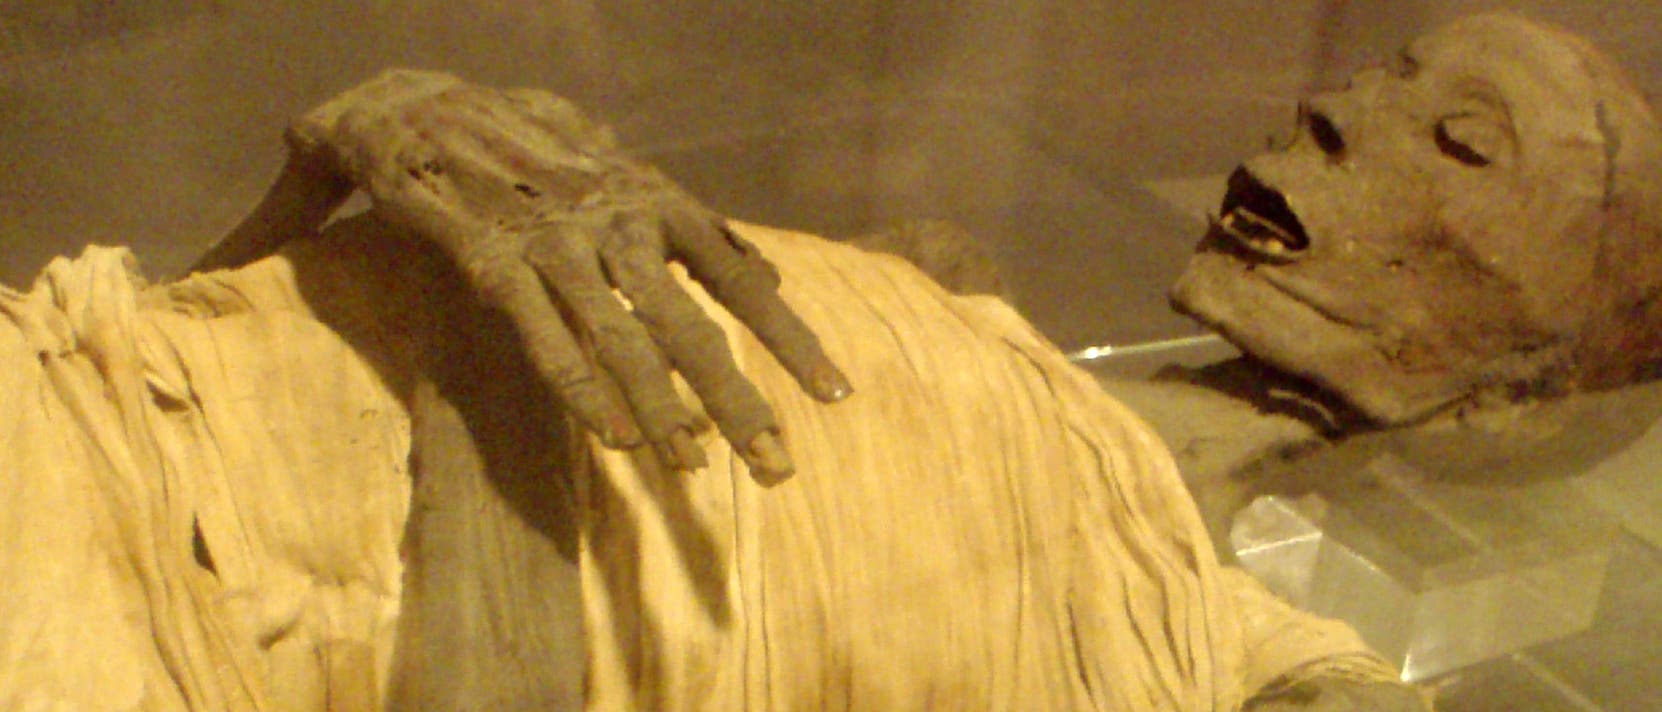 Altägyptische Mumie eines wohlhabenden Mannes der Saite-Periode